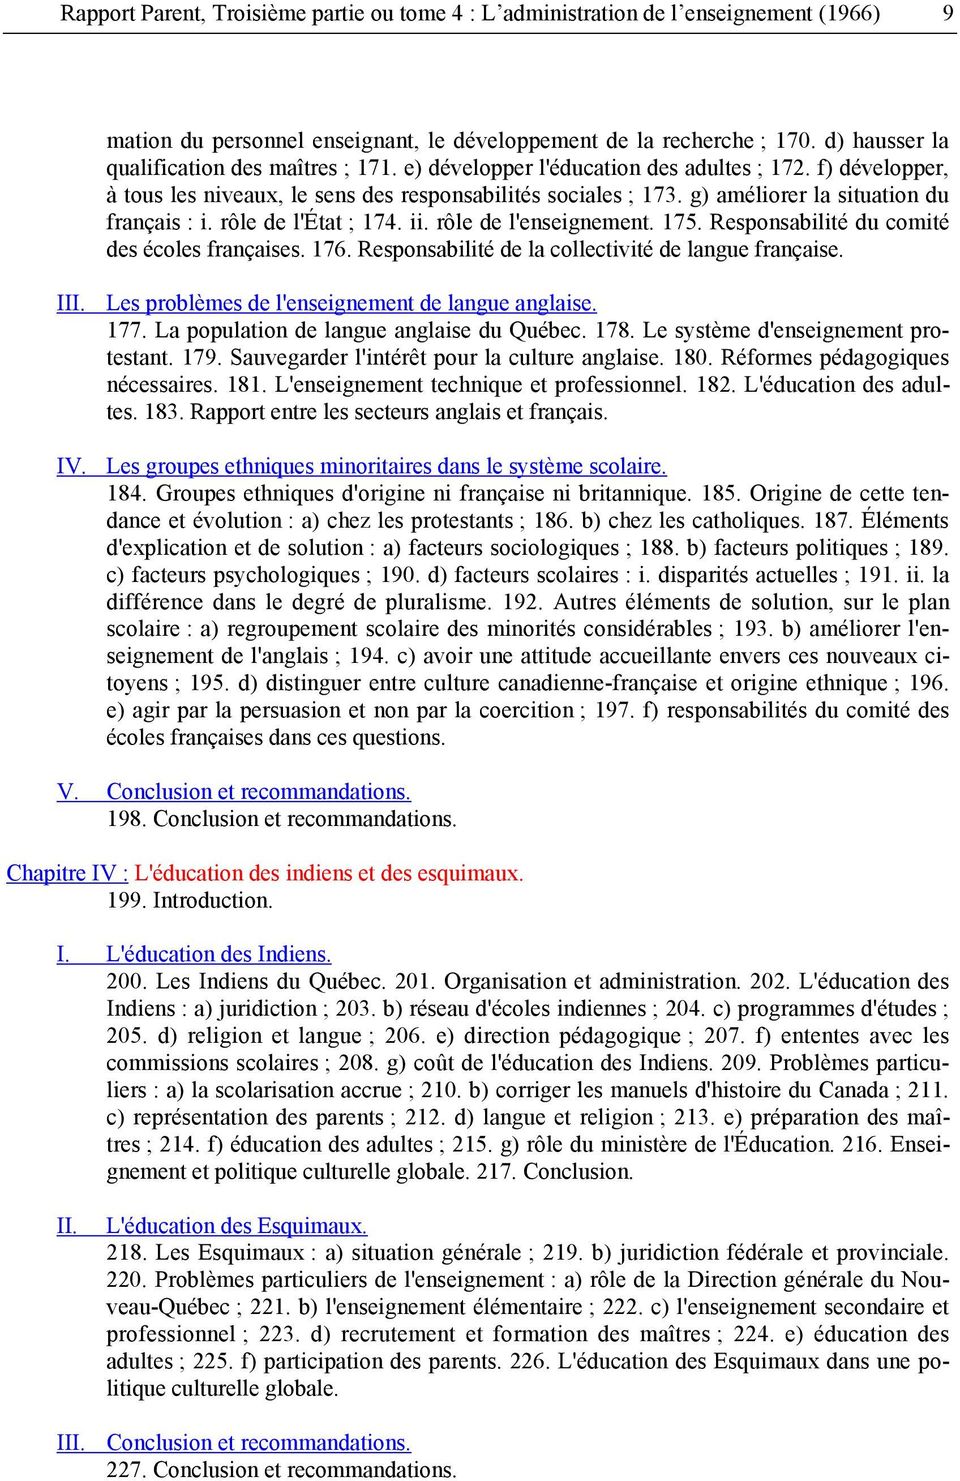 g) améliorer la situation du français : i. rôle de l'état ; 174. ii. rôle de l'enseignement. 175. Responsabilité du comité des écoles françaises. 176.